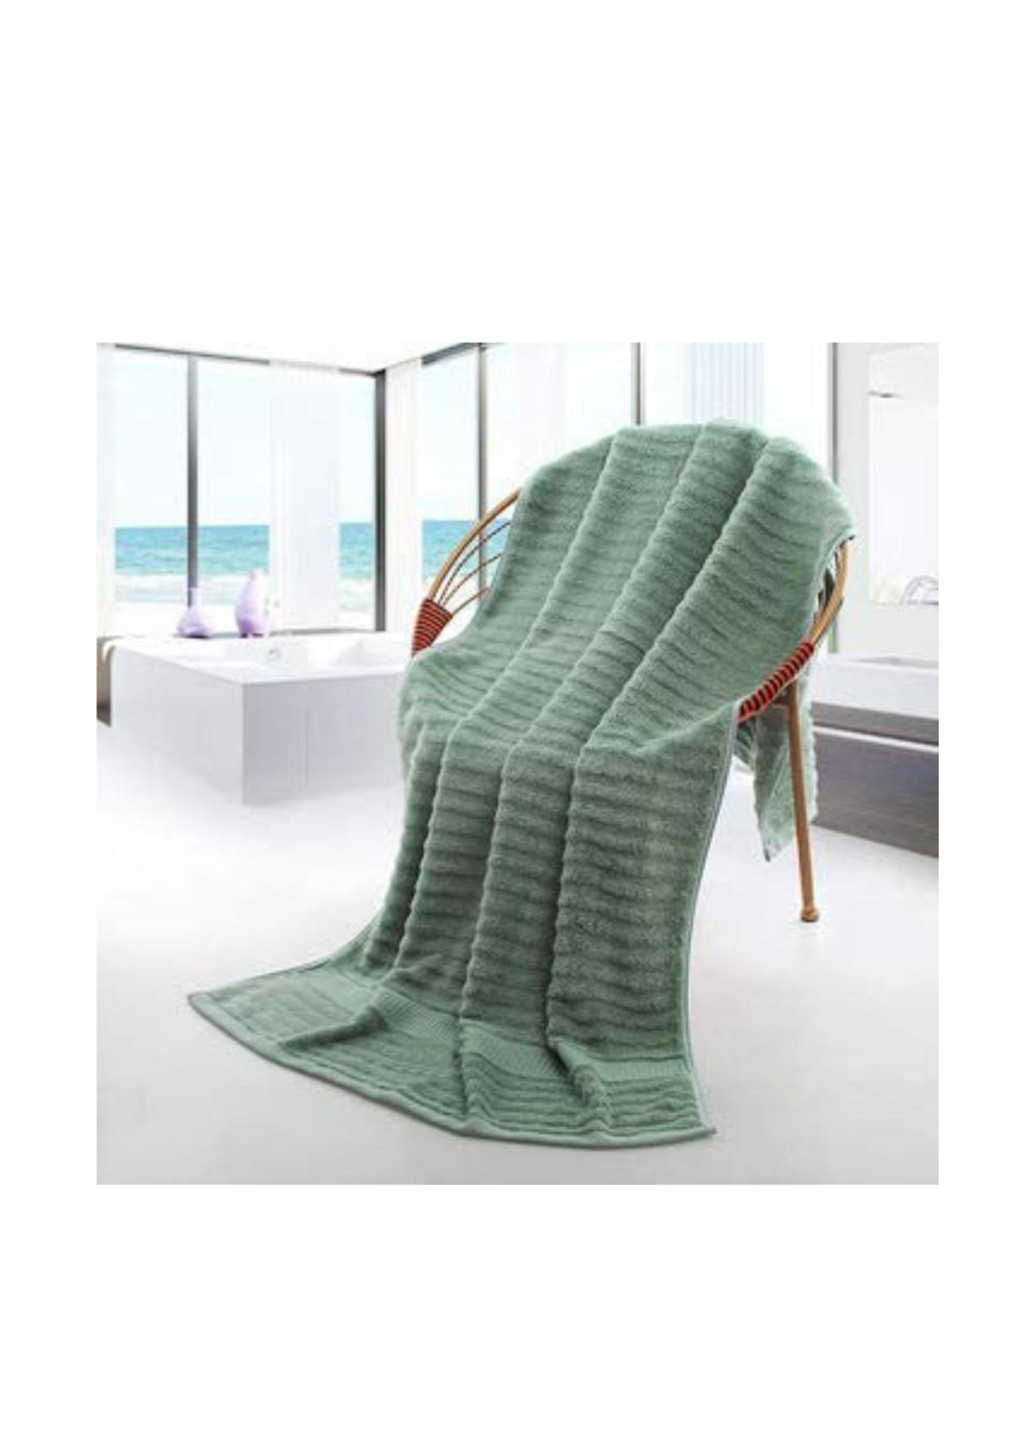 Lovely Svi полотенце (3 шт.), 70х140 см, 34х72 см, 33х33 см однотонный светло-зеленый производство - Китай